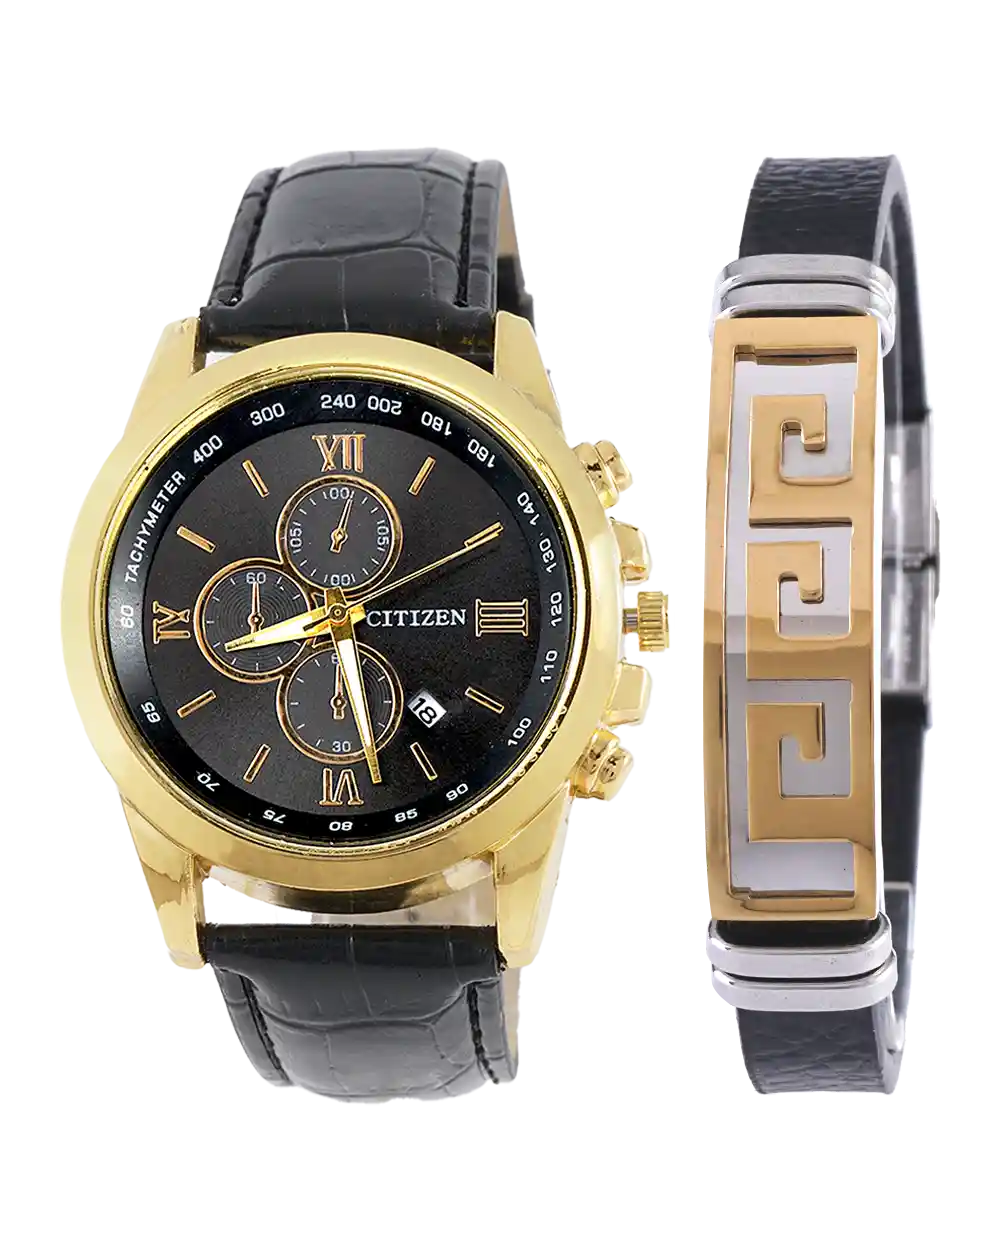 خرید ست ساعت مچی و دستبند مردانه سیتیزن CITIZEN مدل 1597 با بهترین قیمت همراه با ارسال رایگان و جعبه ی کادویی شیک | ست ساعت و دستبند چرمی